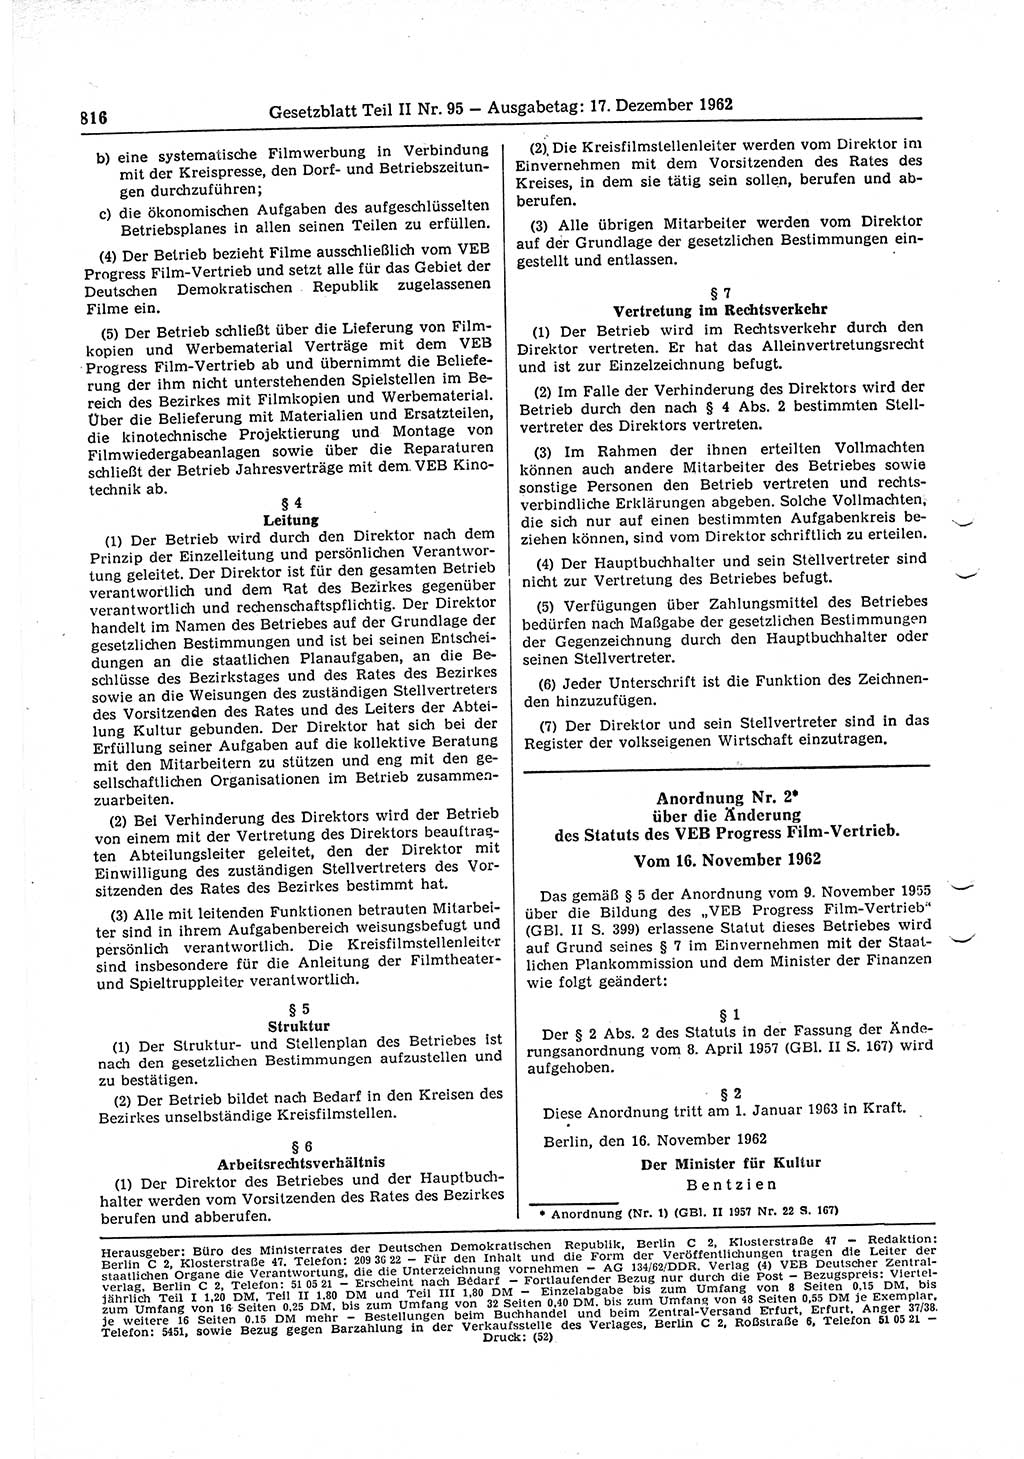 Gesetzblatt (GBl.) der Deutschen Demokratischen Republik (DDR) Teil ⅠⅠ 1962, Seite 816 (GBl. DDR ⅠⅠ 1962, S. 816)